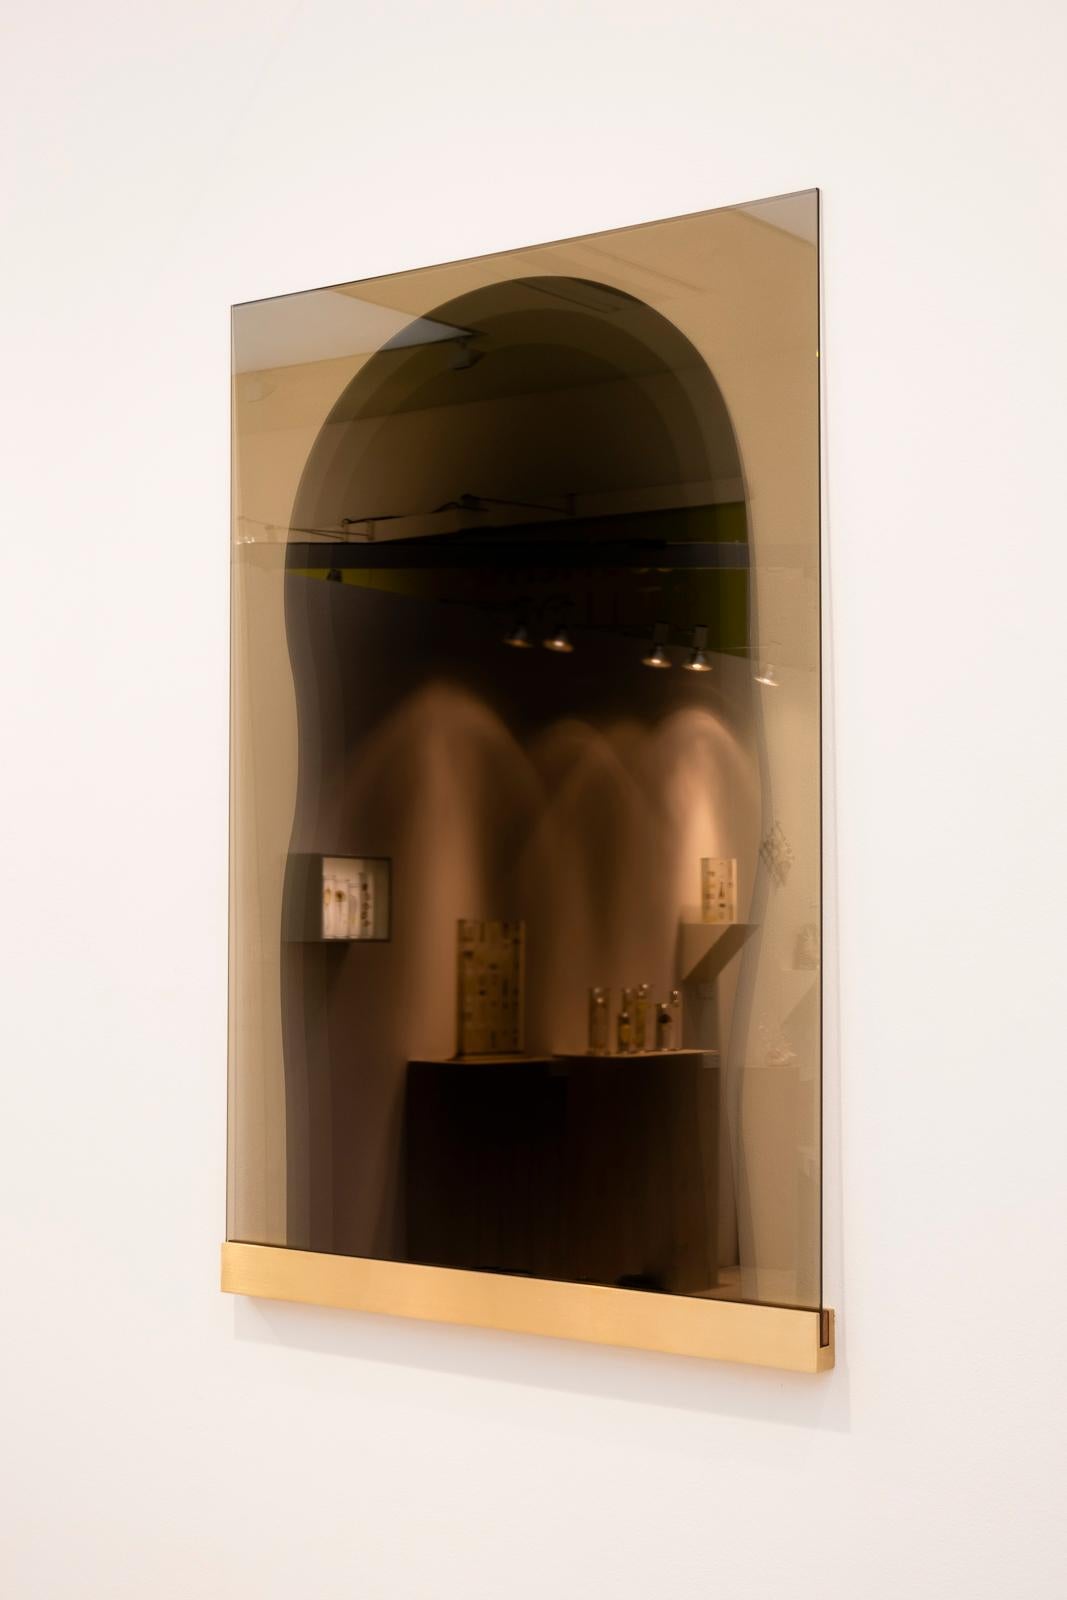 Miroir en bois unique et personnalisé de Kim Thome
Dimensions : Sur mesure
Matériaux : Verre, film architectural réfléchissant

Kim Thomé est un designer norvégien basé à Londres.